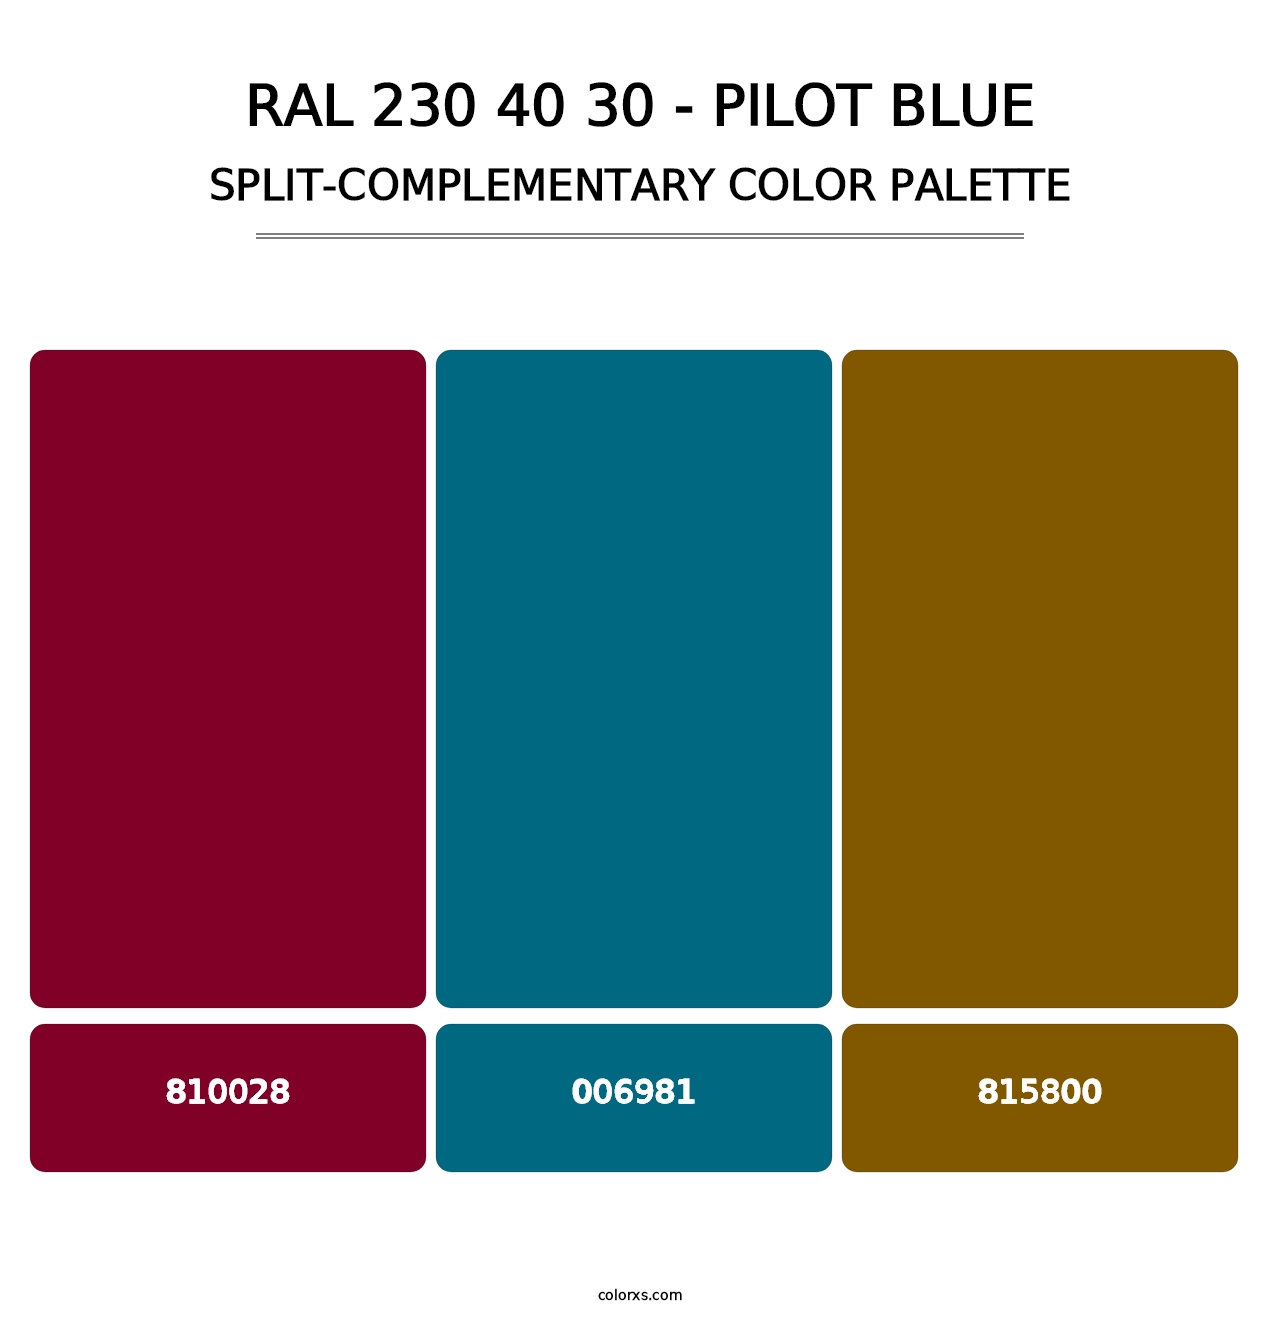 RAL 230 40 30 - Pilot Blue - Split-Complementary Color Palette